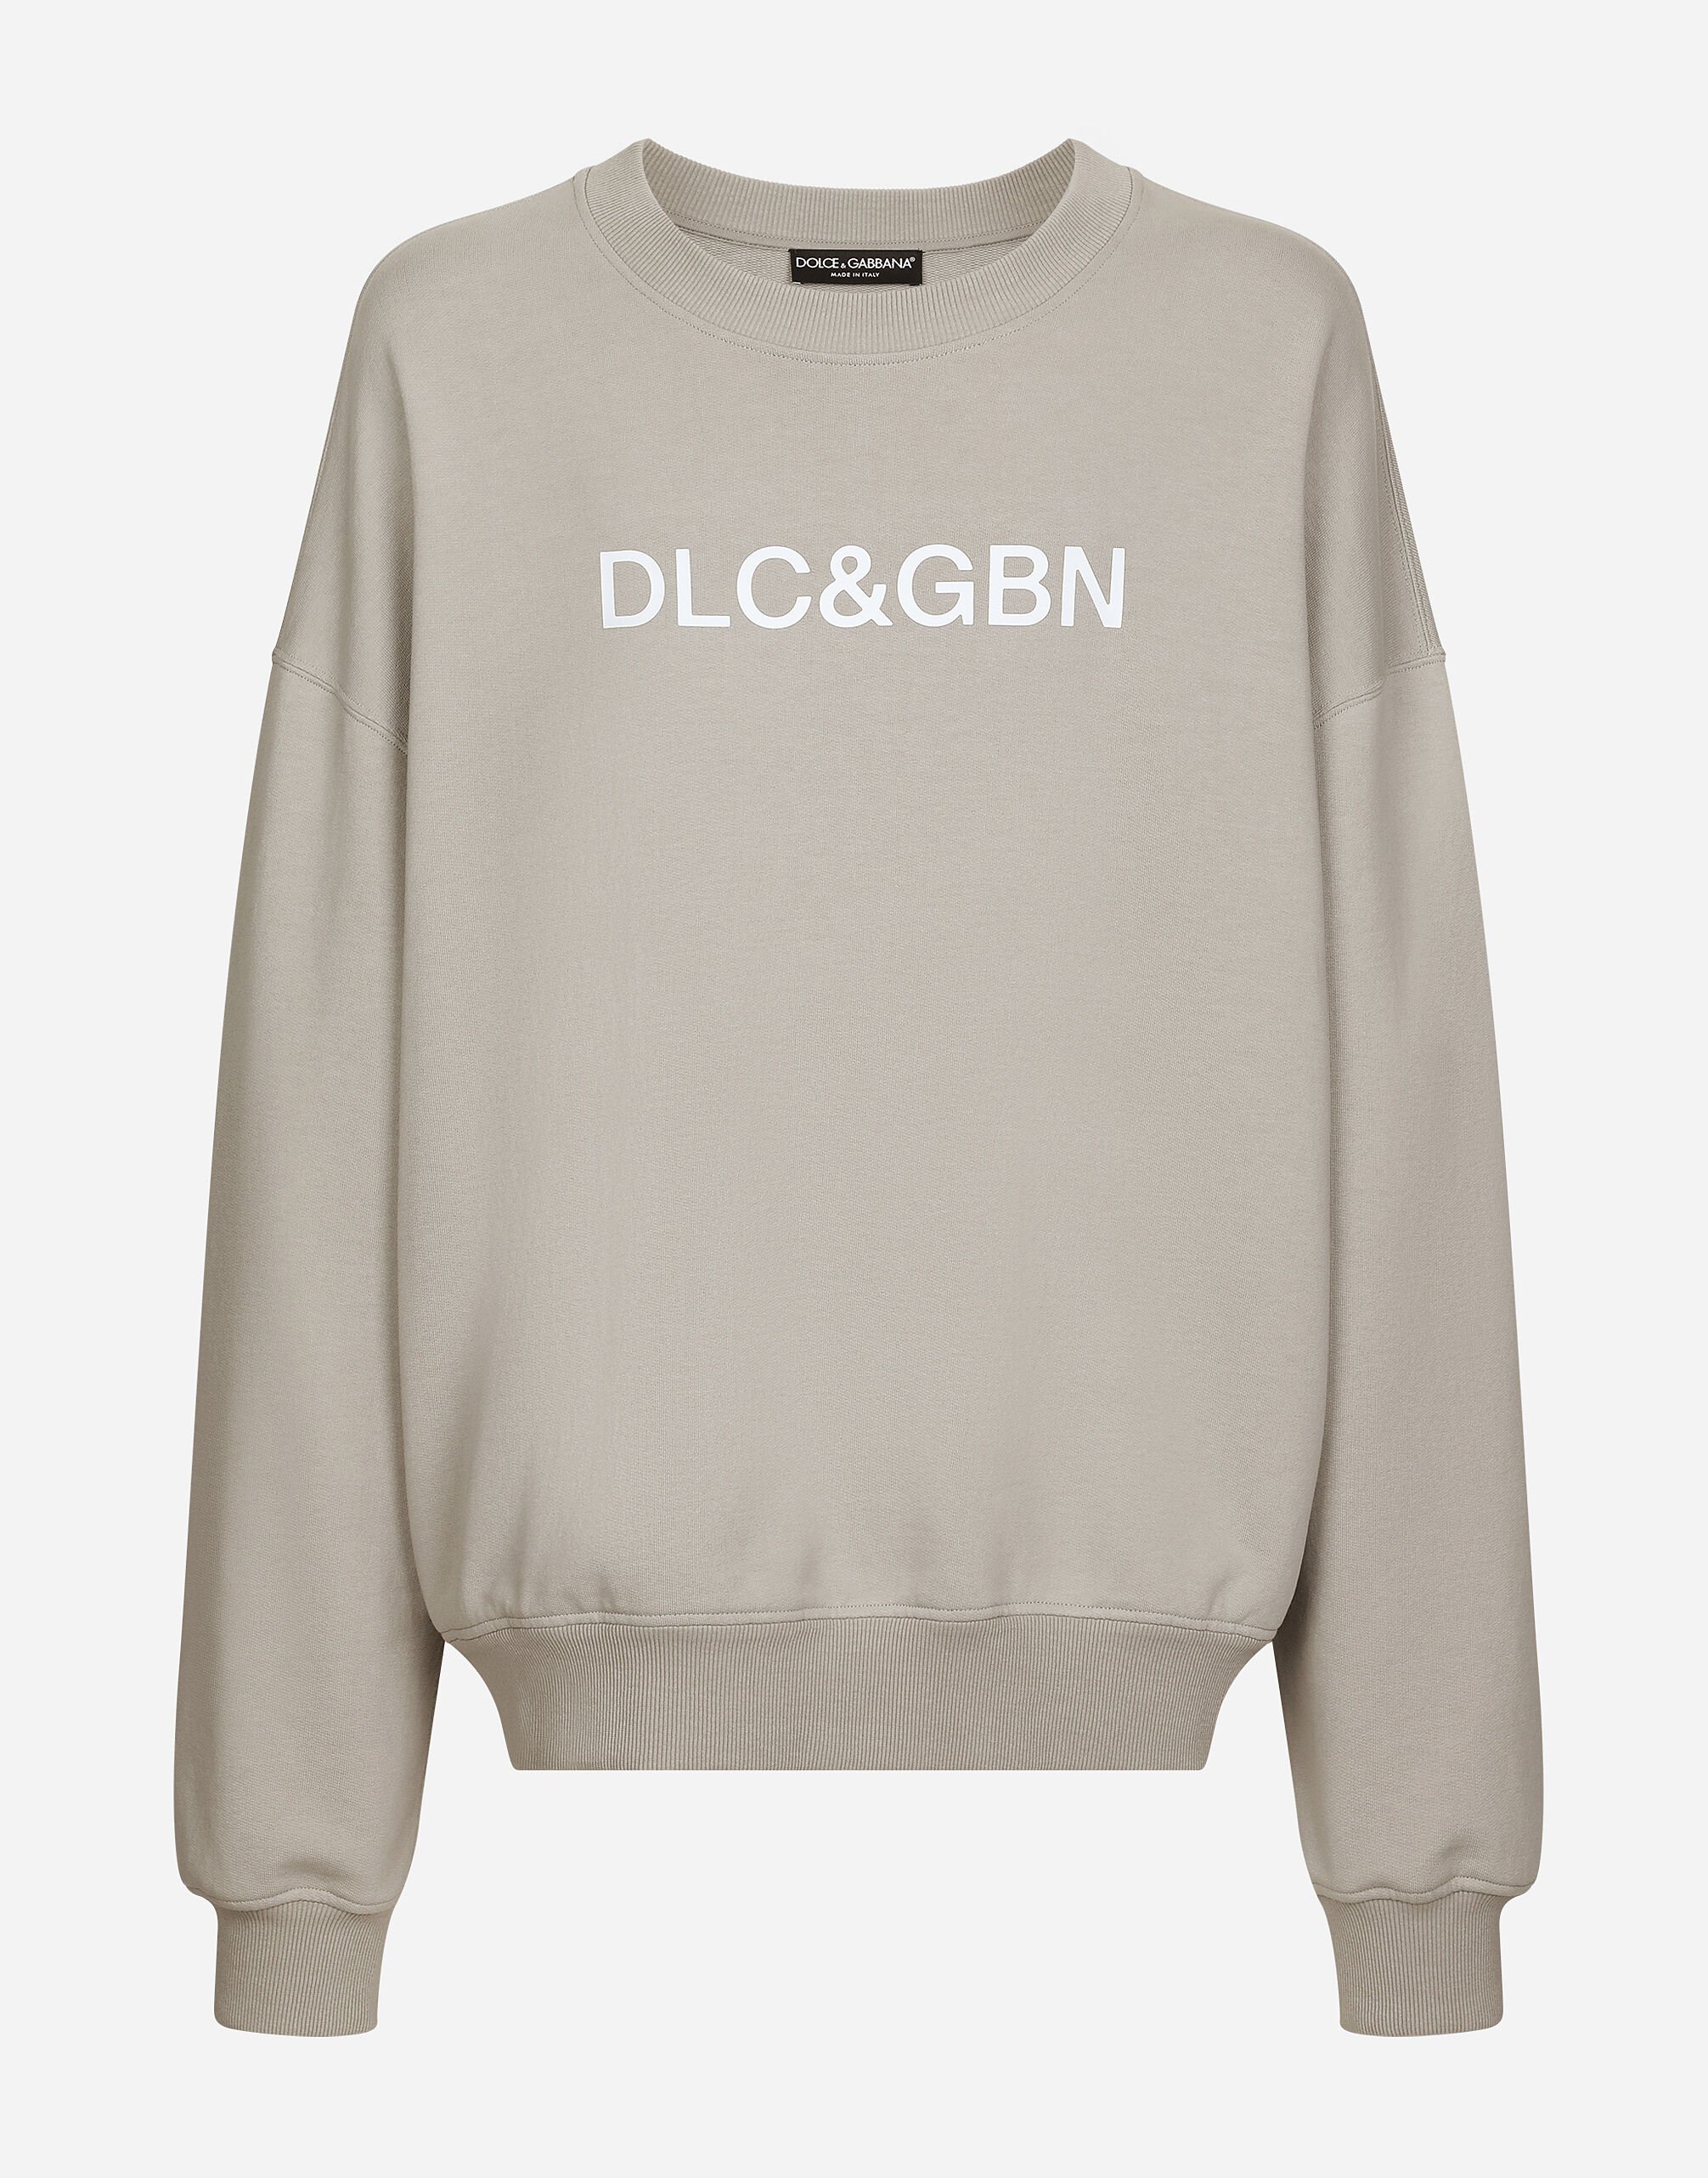 Dolce & Gabbana Round-neck sweatshirt with Dolce&Gabbana logo print Beige G9AKPZG7NQI